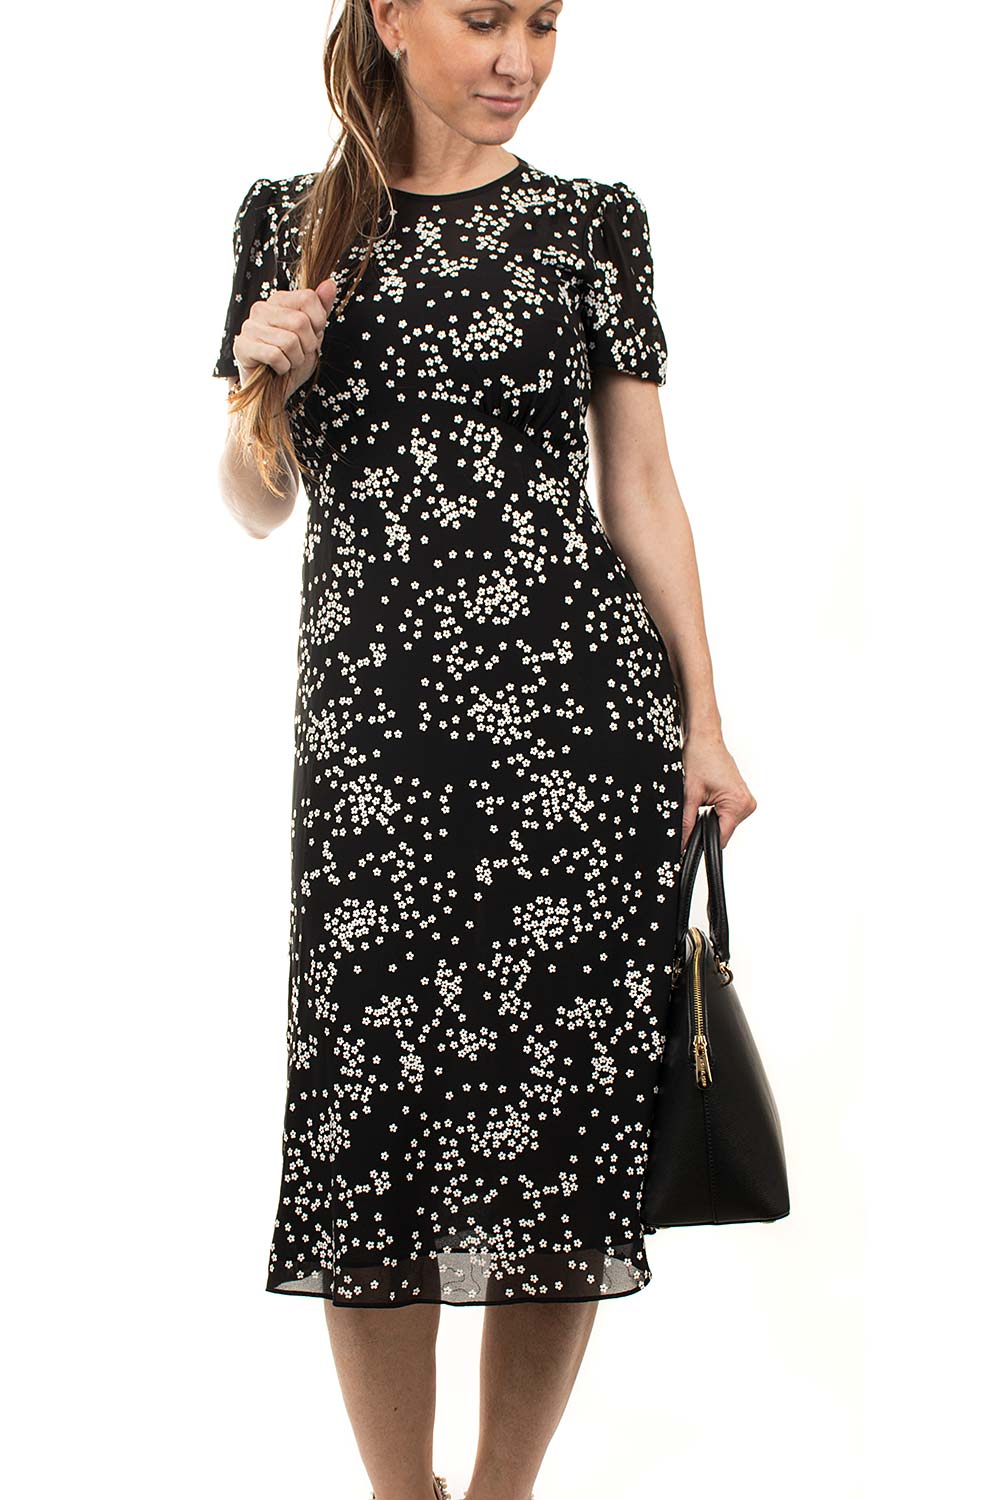 Michael Kors dámské šaty černé s kytičkami Velikost: XS